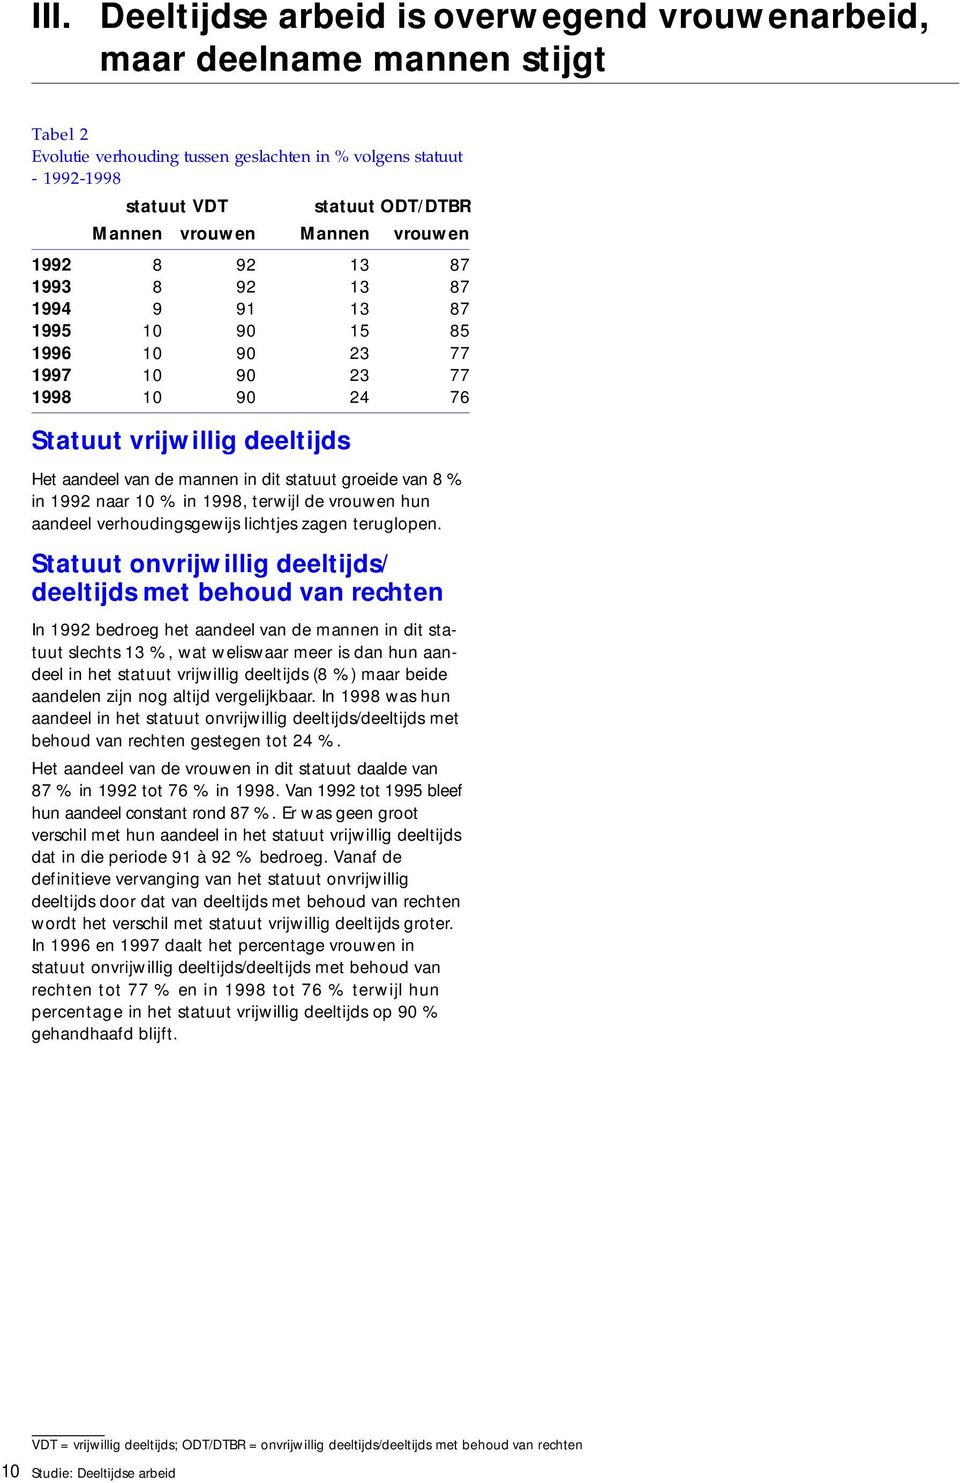 statuut groeide van 8 % in 1992 naar 1 % in 1998, terwijl de vrouwen hun aandeel verhoudingsgewijs lichtjes zagen teruglopen.